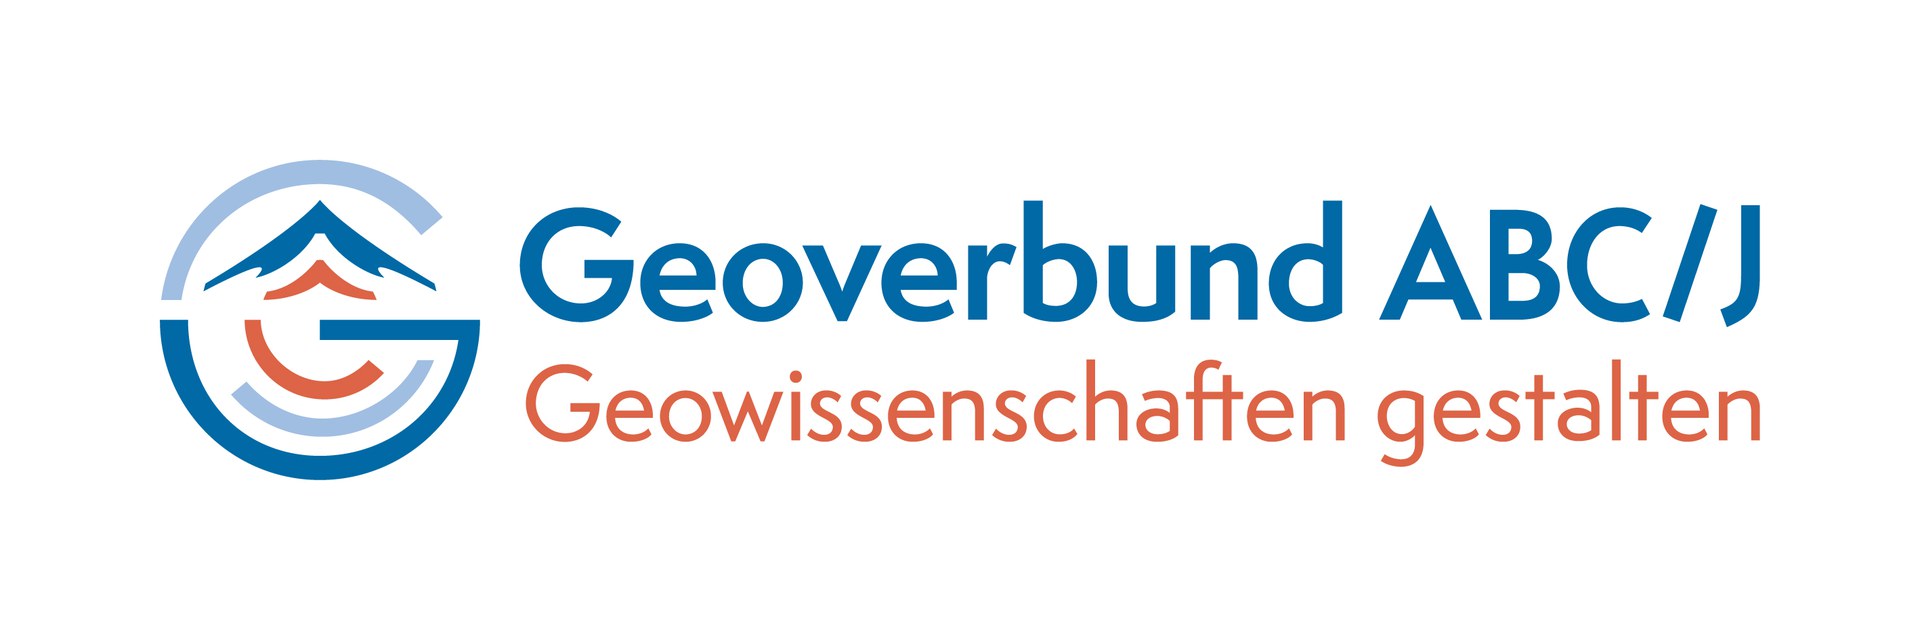 Logo of the Geoverbund